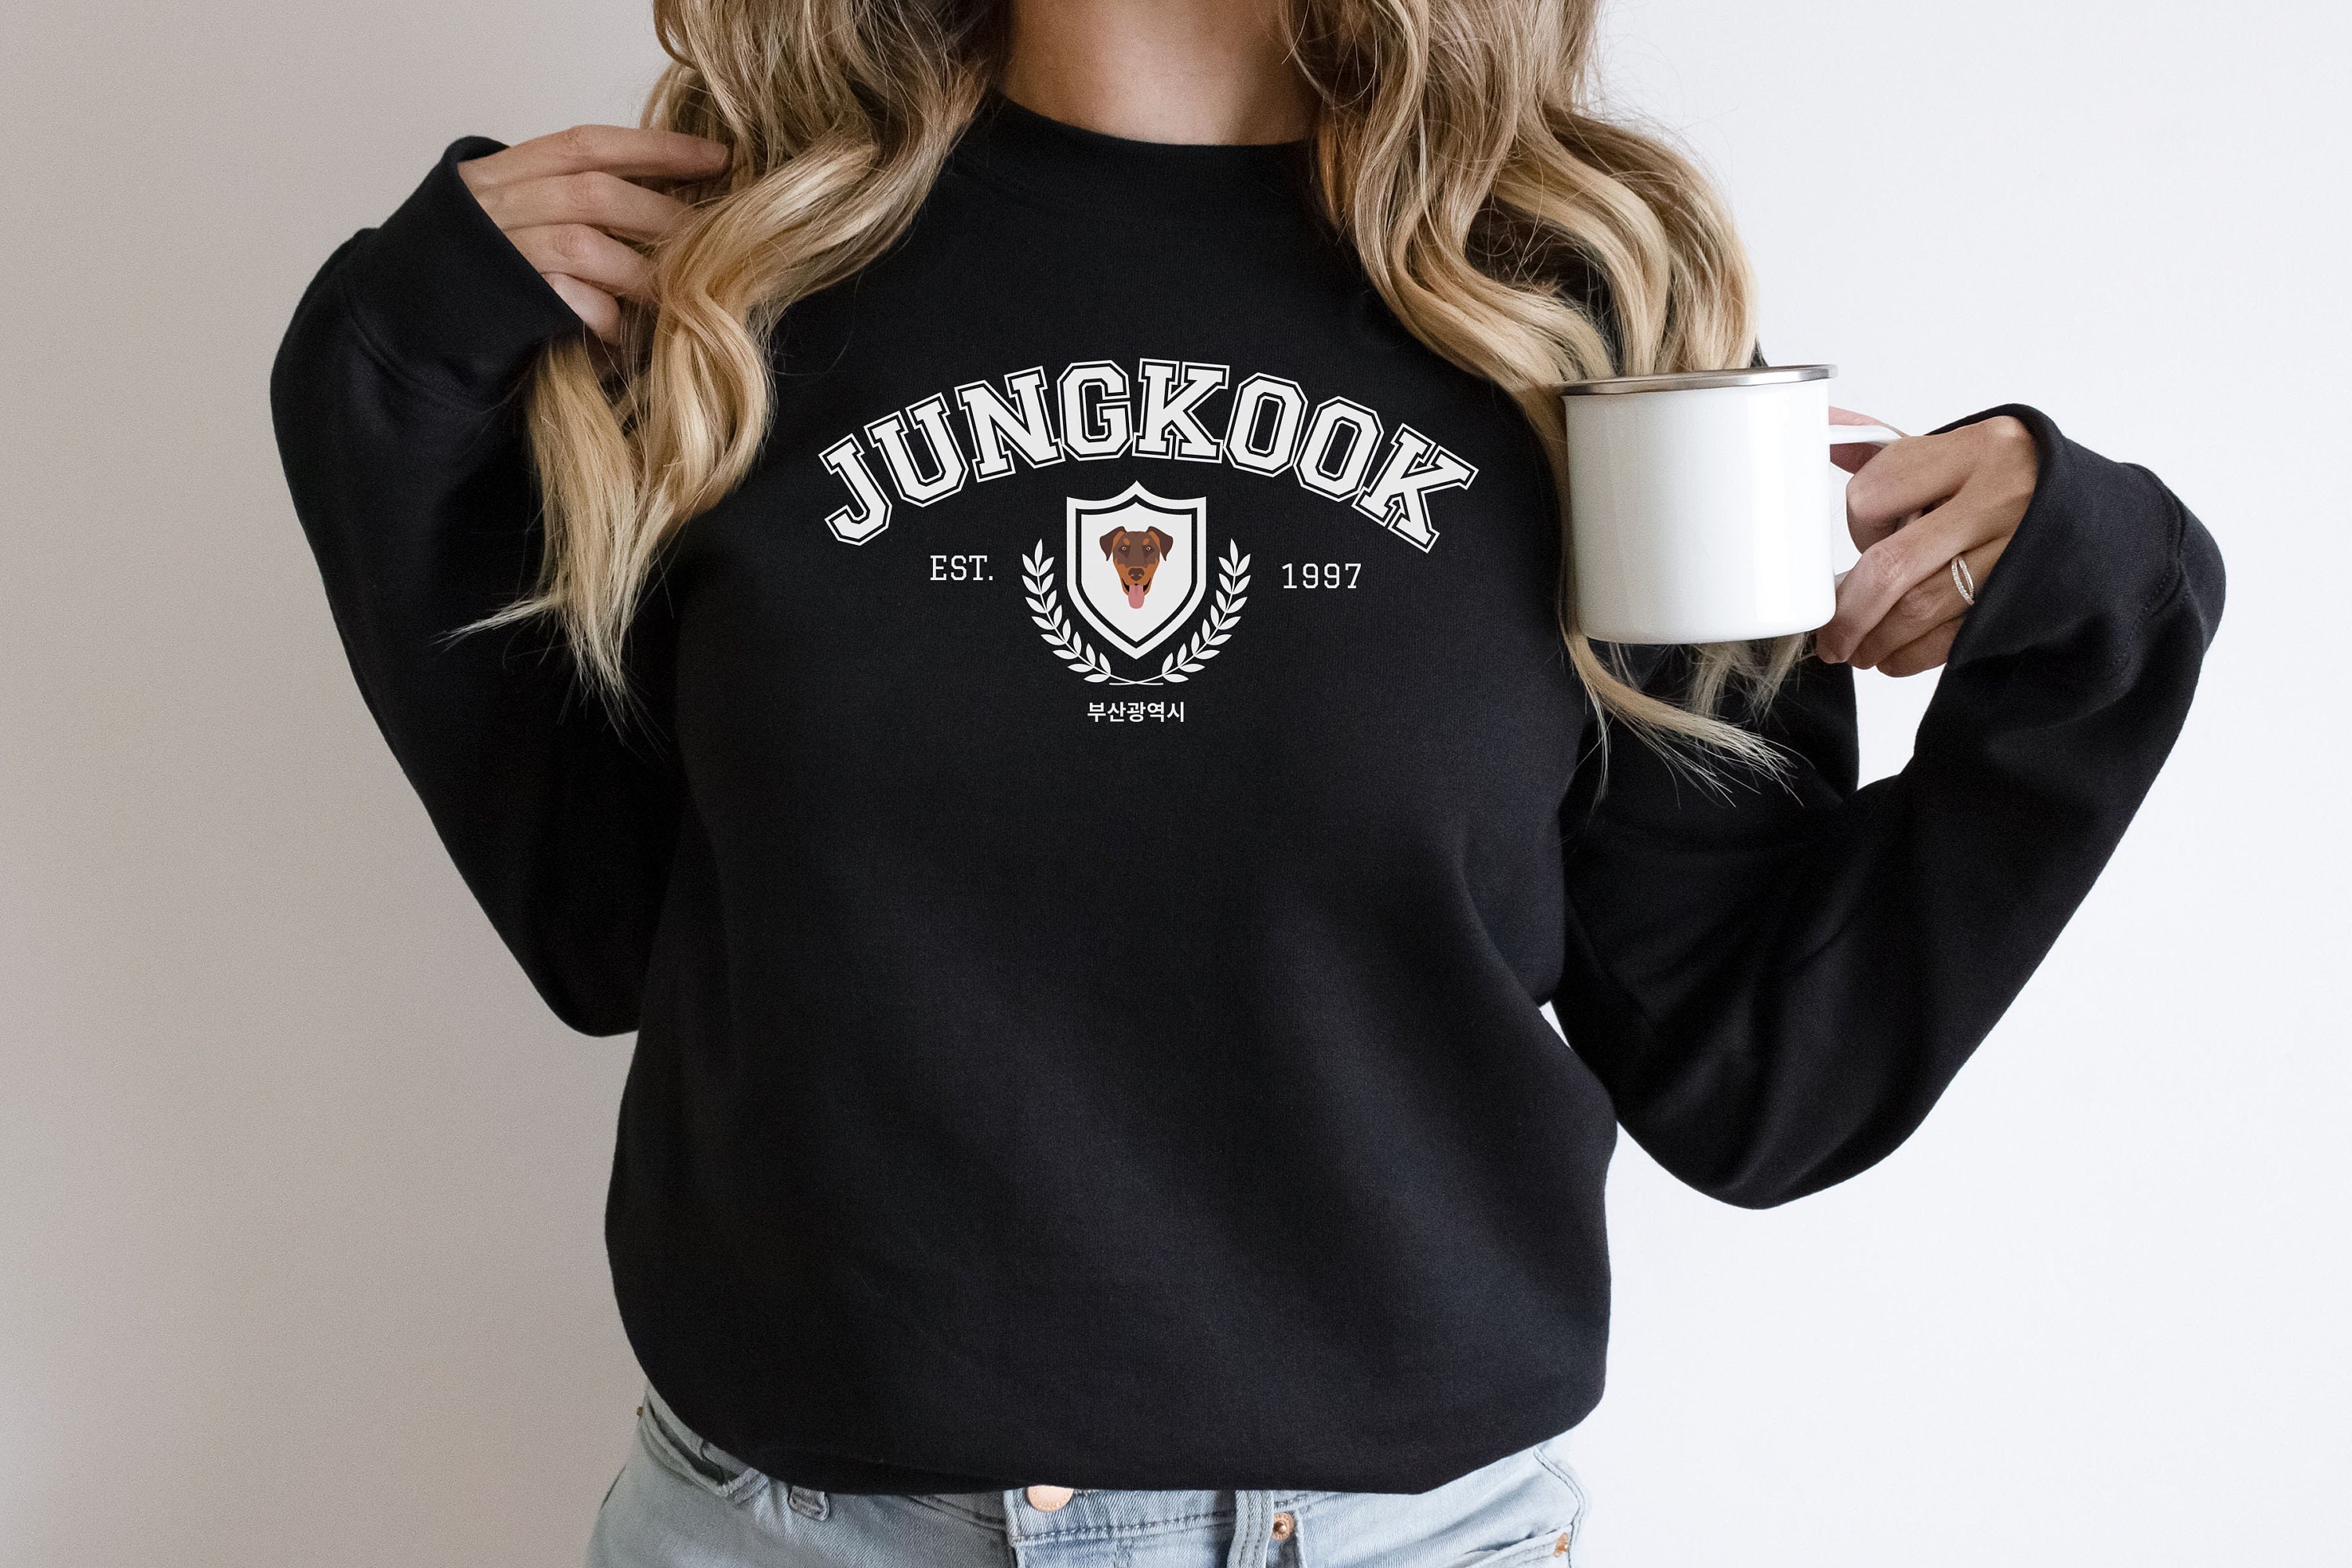 BTS Jungkook Wear Official VARSITY Hoodie 07 L Size Sweatshirt